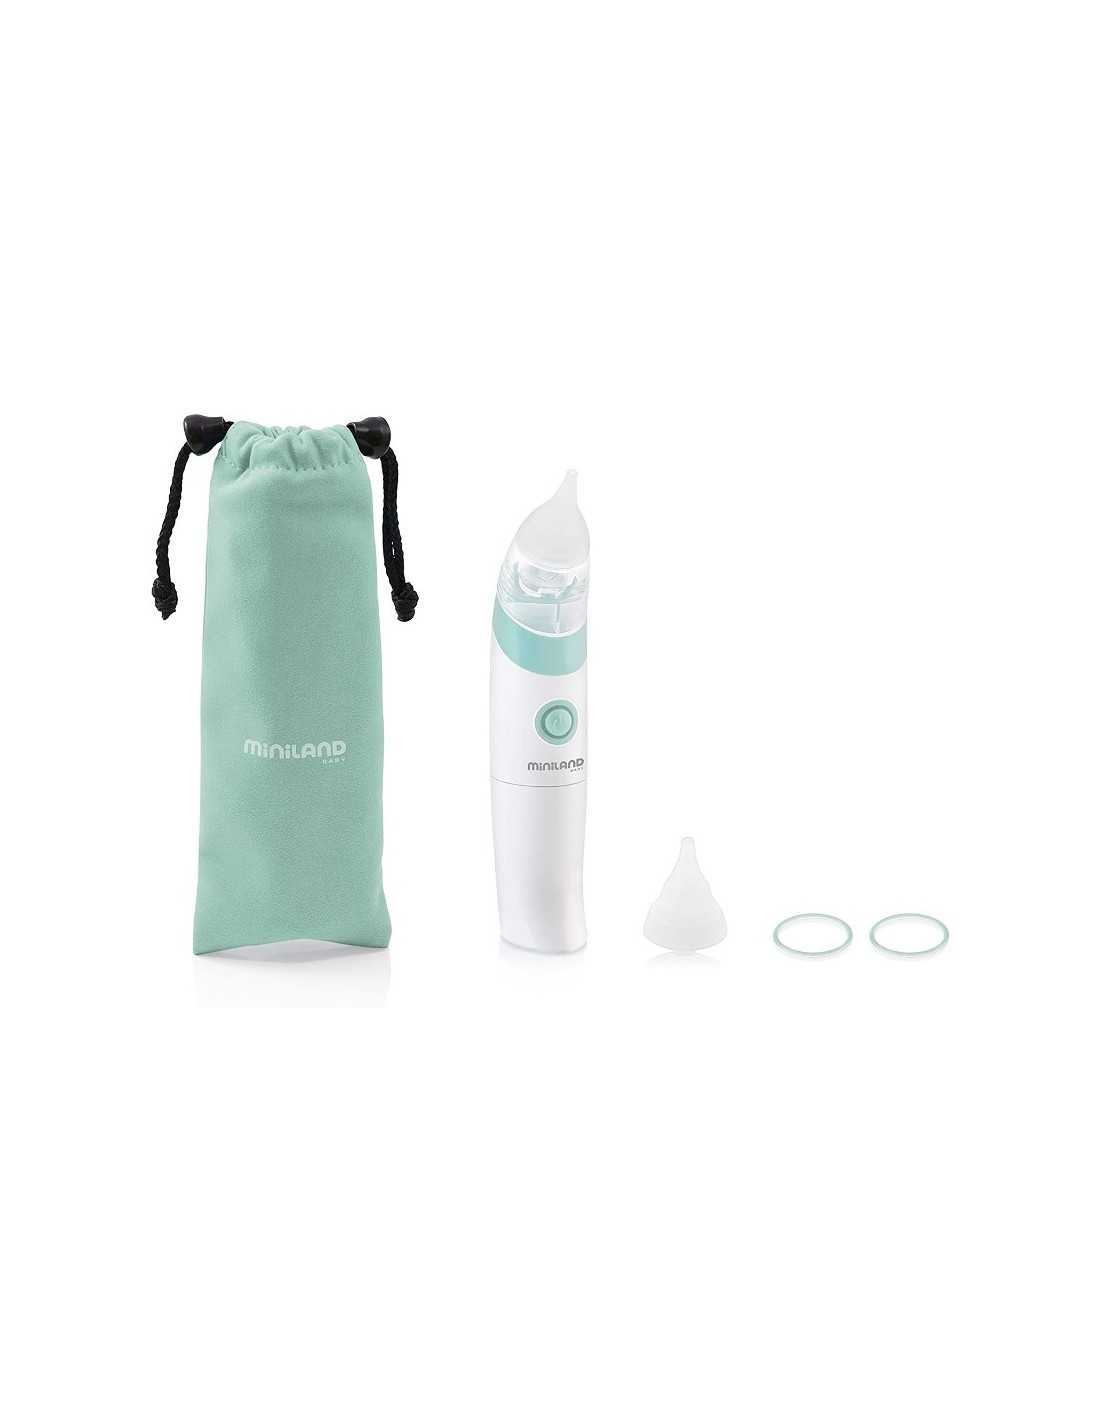 Miniland - Aspiratore nasale elettrico Nasal Care